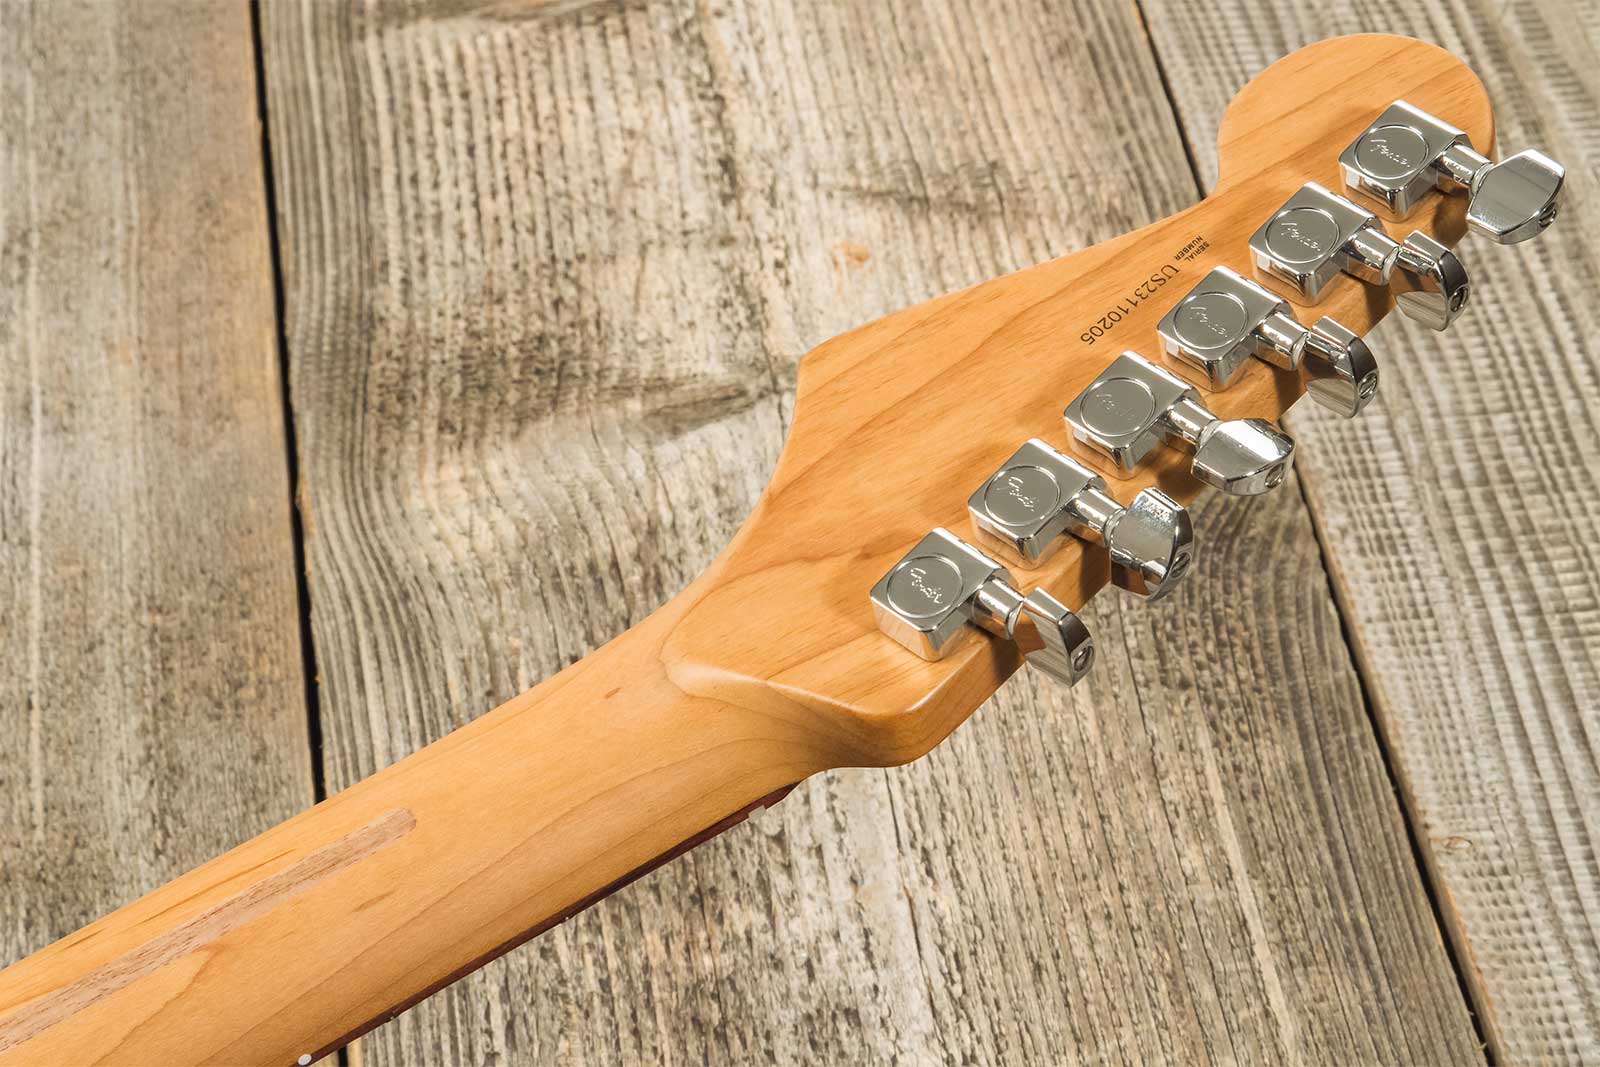 Fender Strat American Professional Ii Ltd Usa 3s Trem Rw - Fiesta Red - Elektrische gitaar in Str-vorm - Variation 10